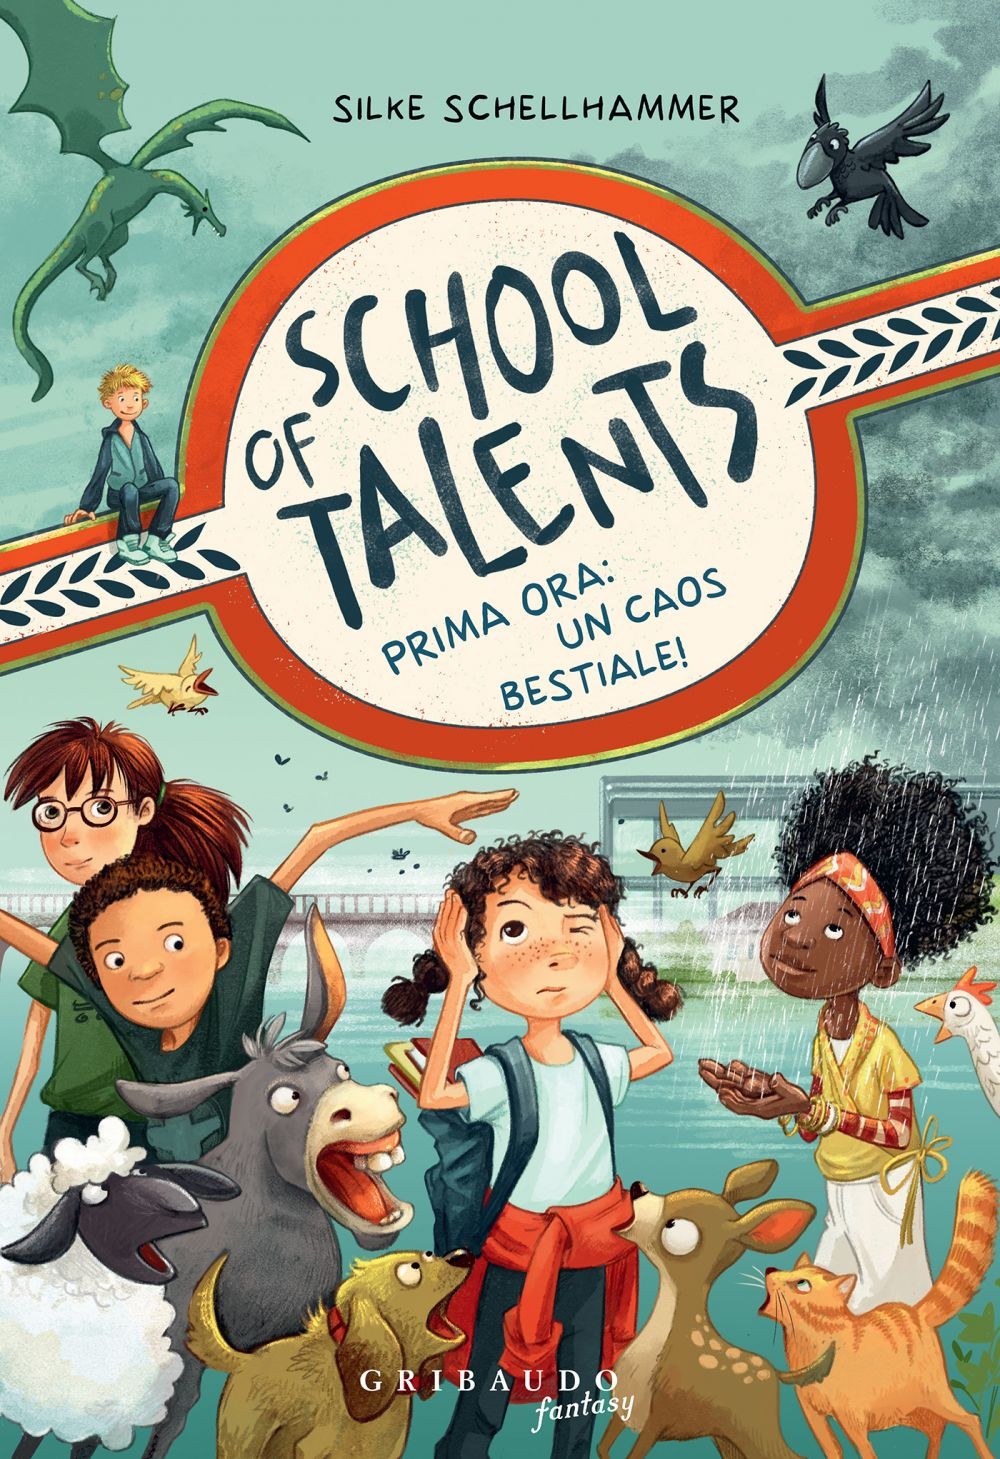 Prima ora: un caos bestiale! School of talents (Vol. 1) - Librerie.coop